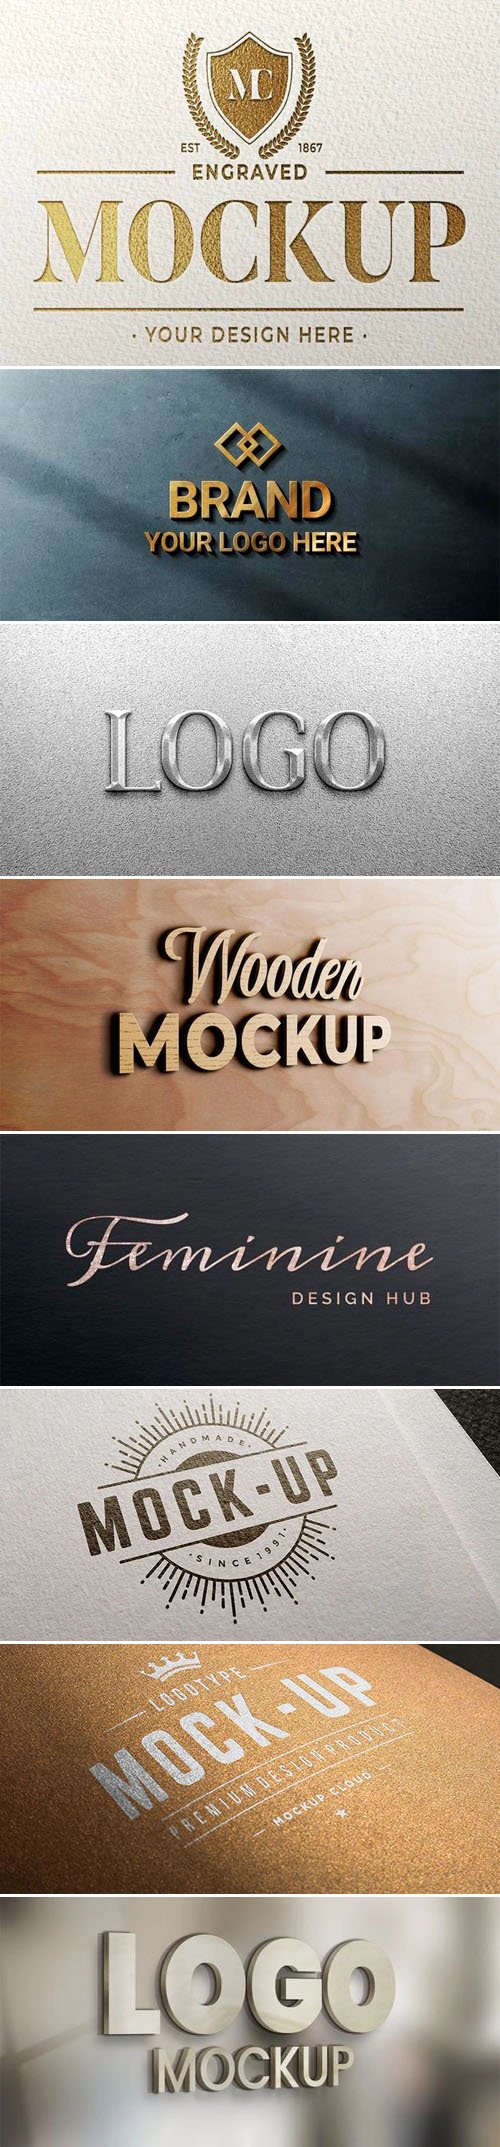 10+ Logo Design PSD Mockups Templates